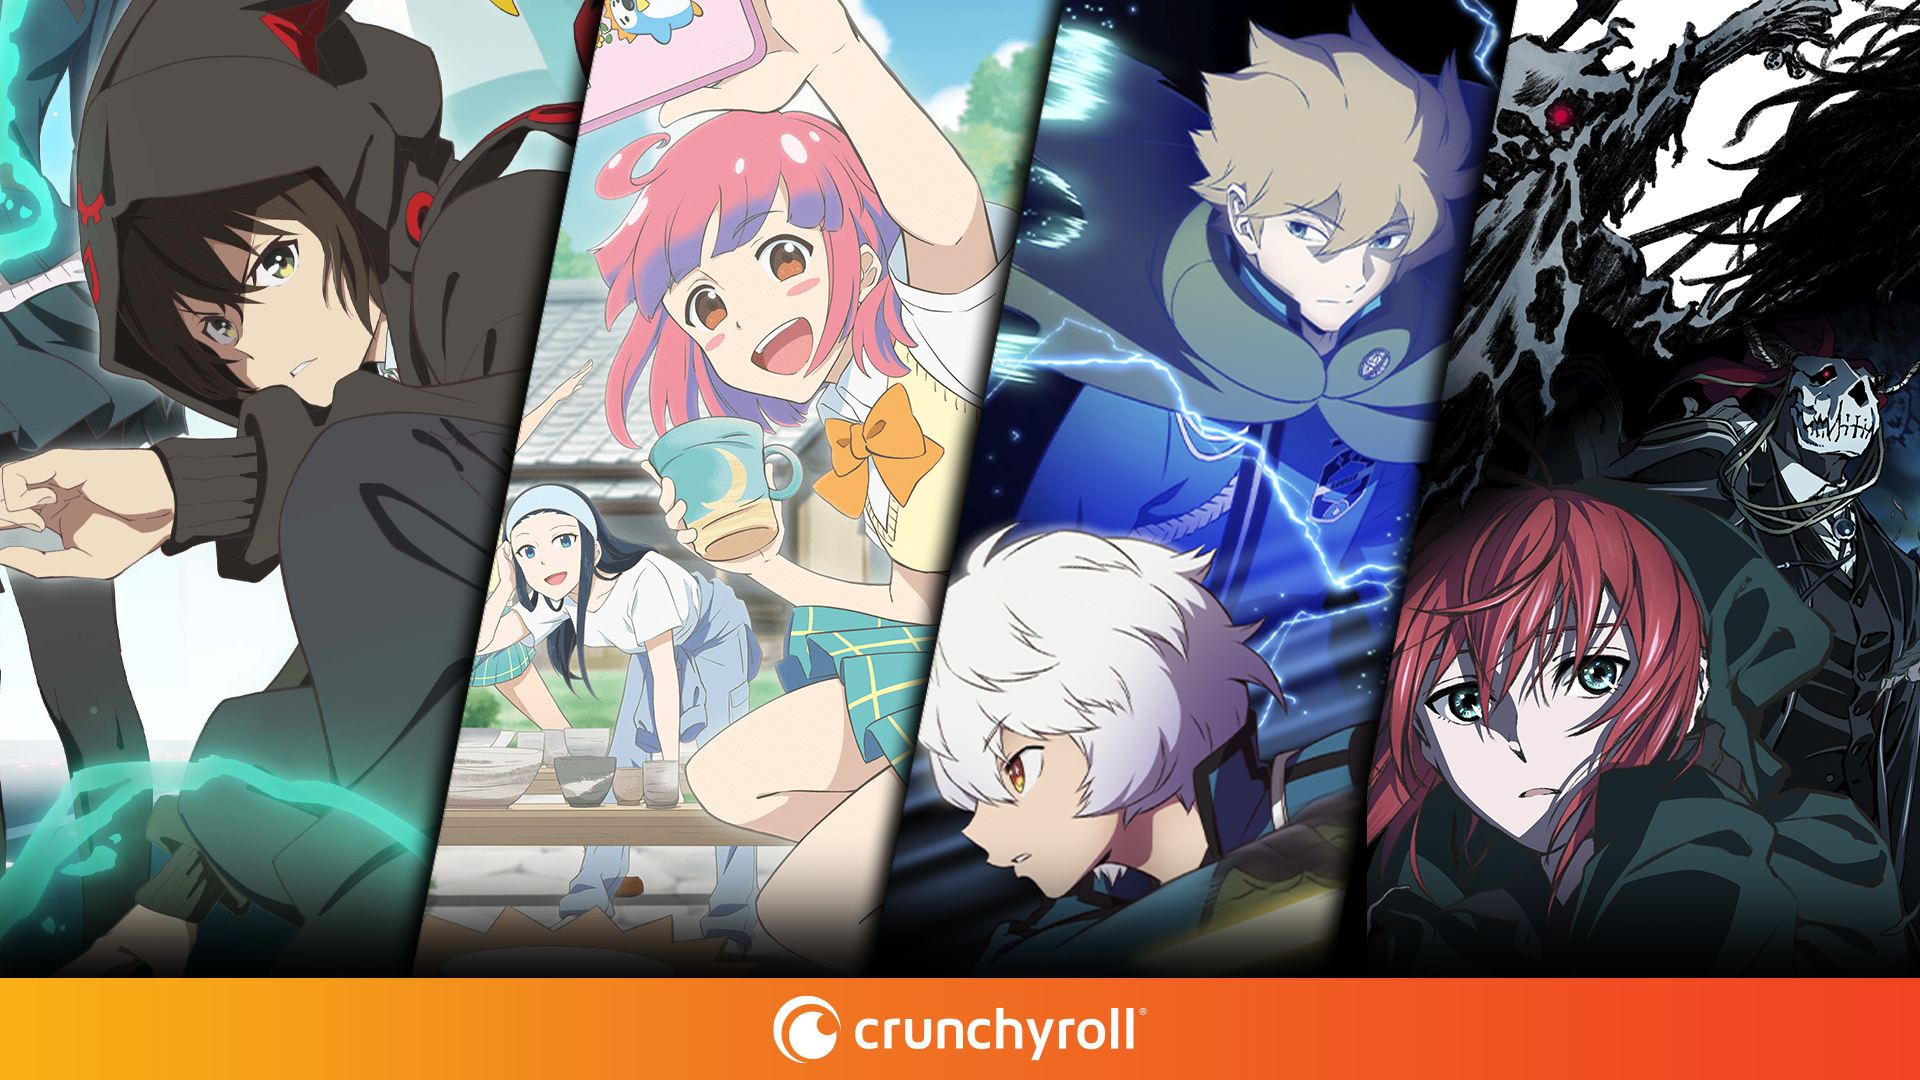 Crunchyroll anuncia quatro títulos para a temporada de outono